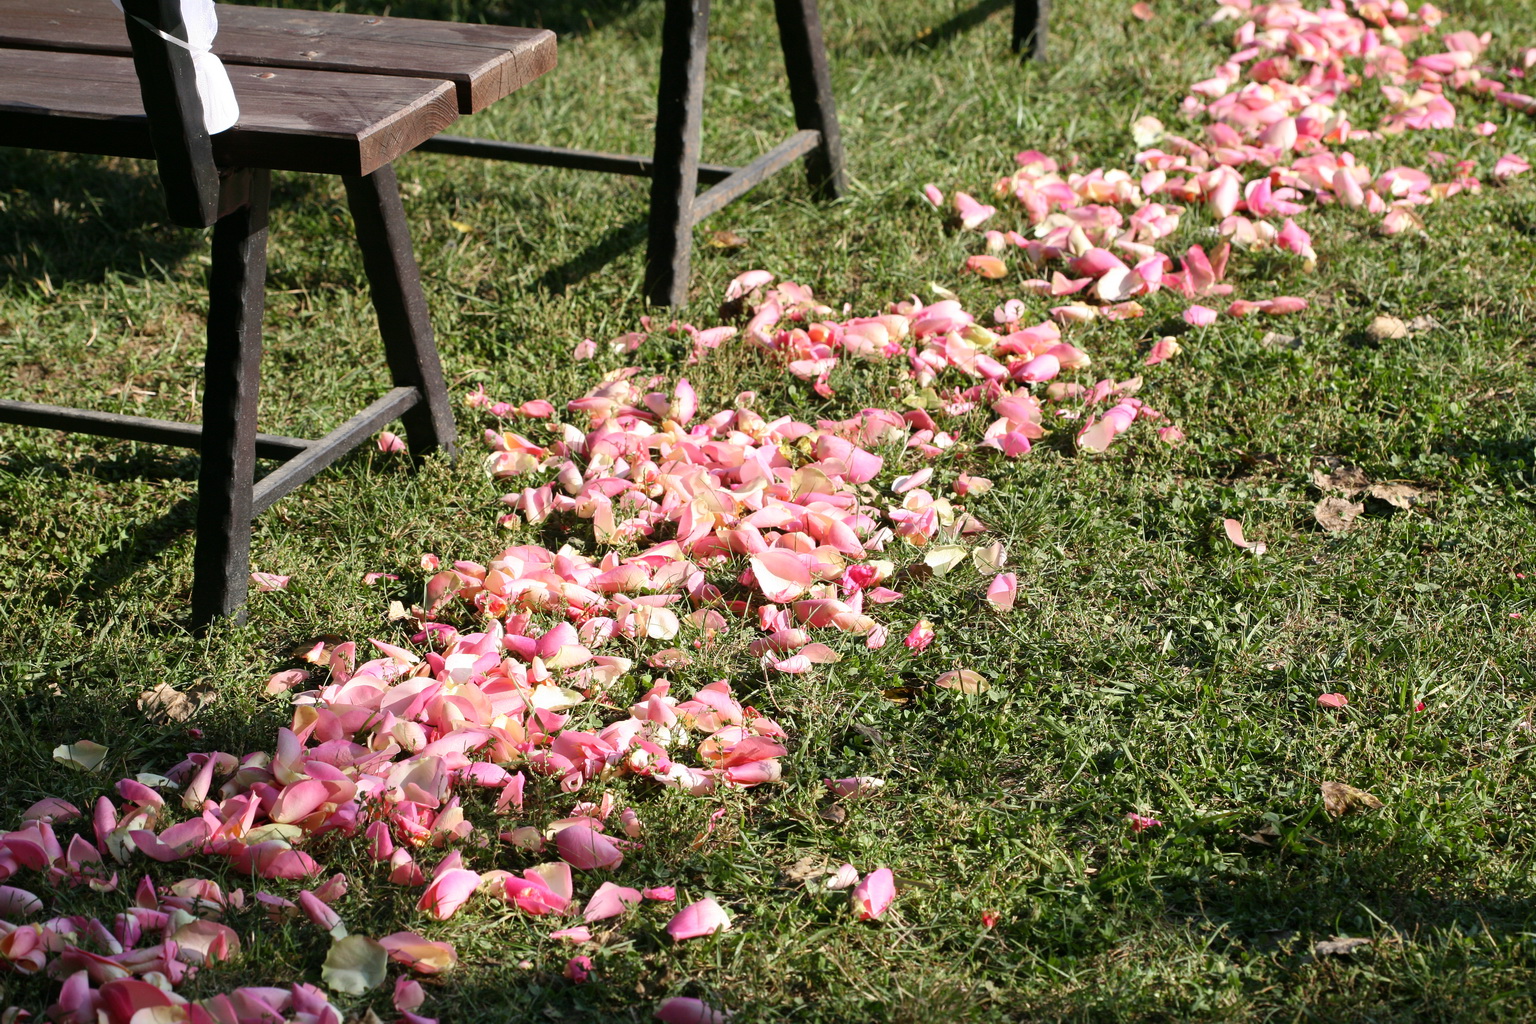 Virágküldés Budapest - rózsaszín szirom szórás (3 m )  Bélapátfalva, esküvő